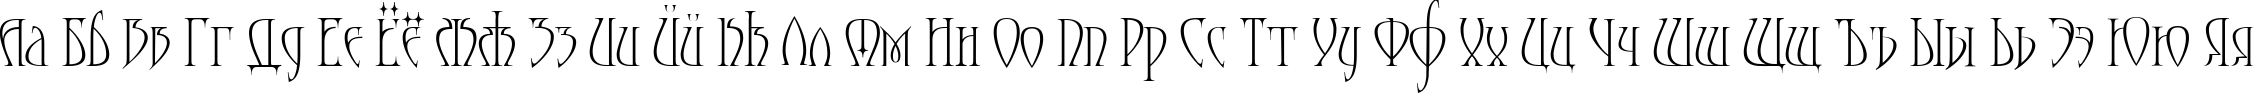 Пример написания русского алфавита шрифтом Moonstone